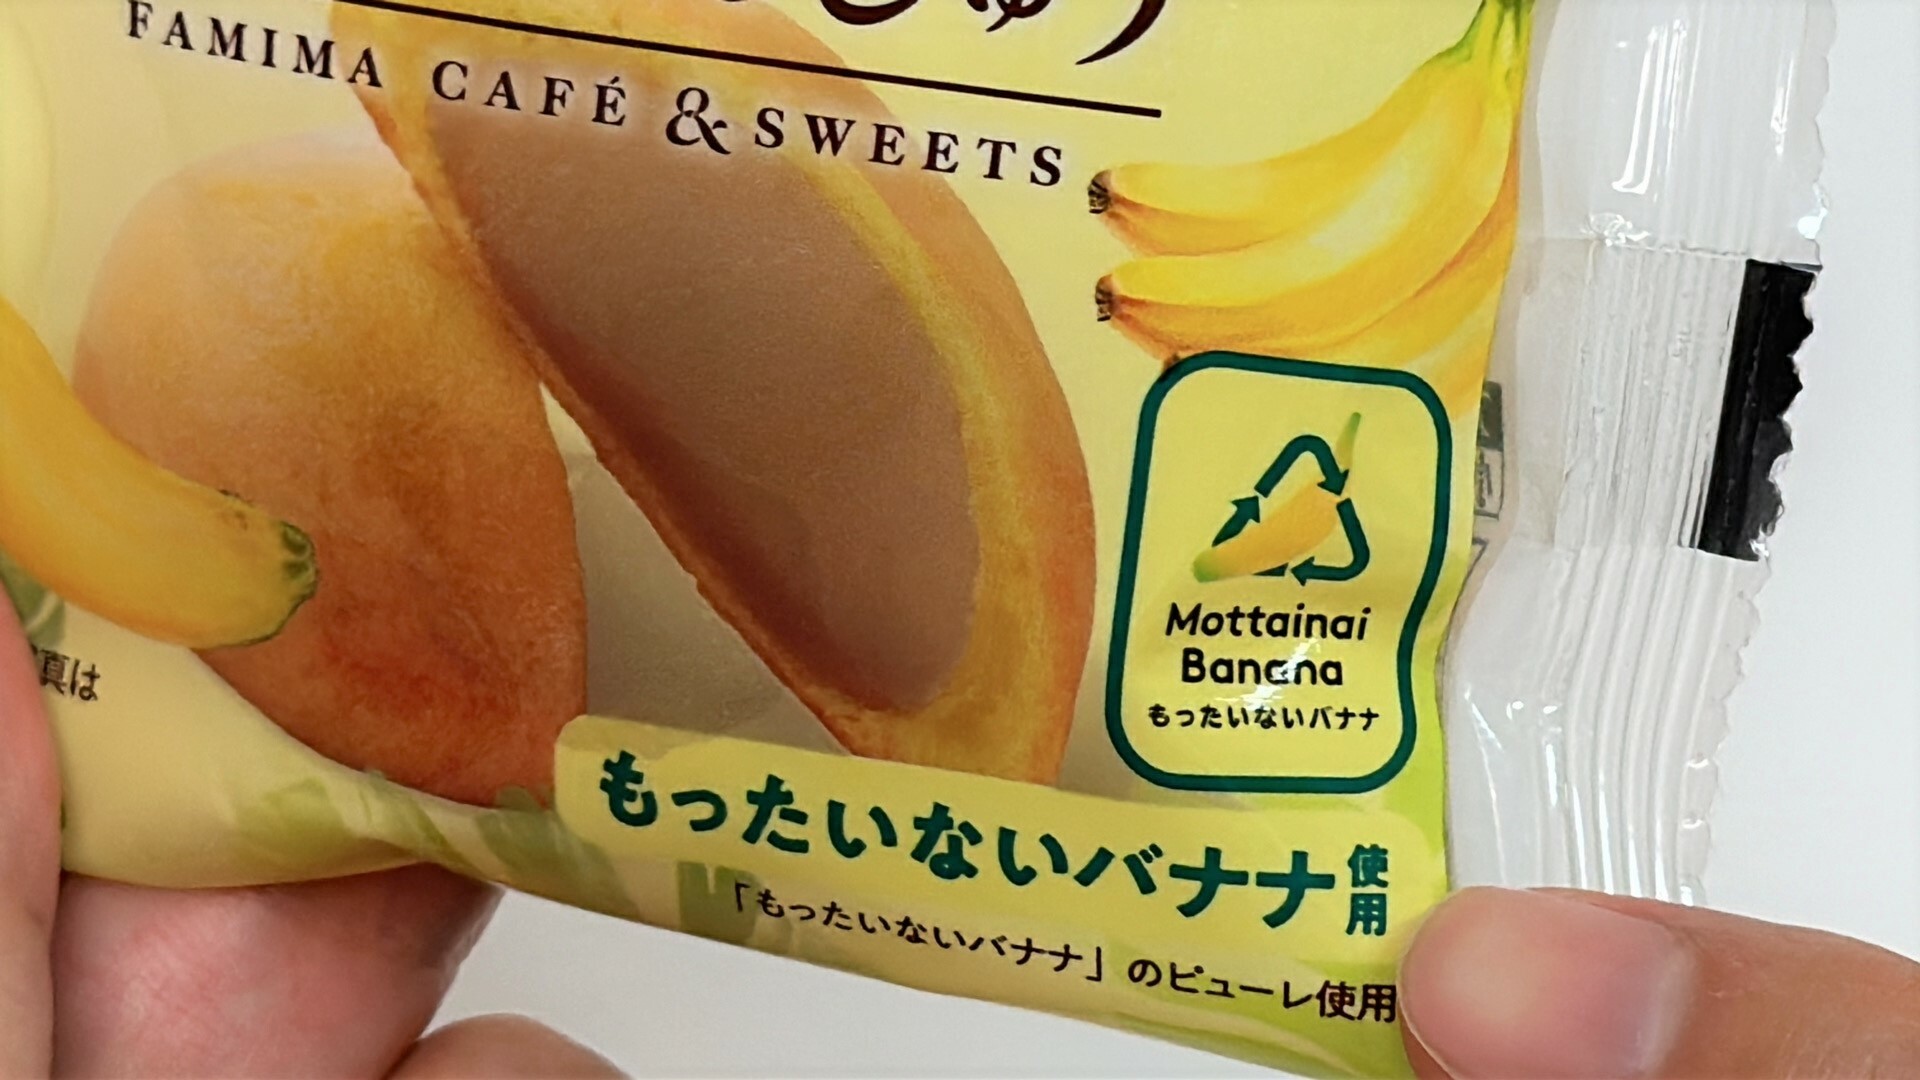 もったいないバナナを使用したファミマのもっちり食感のバナナまんじゅう